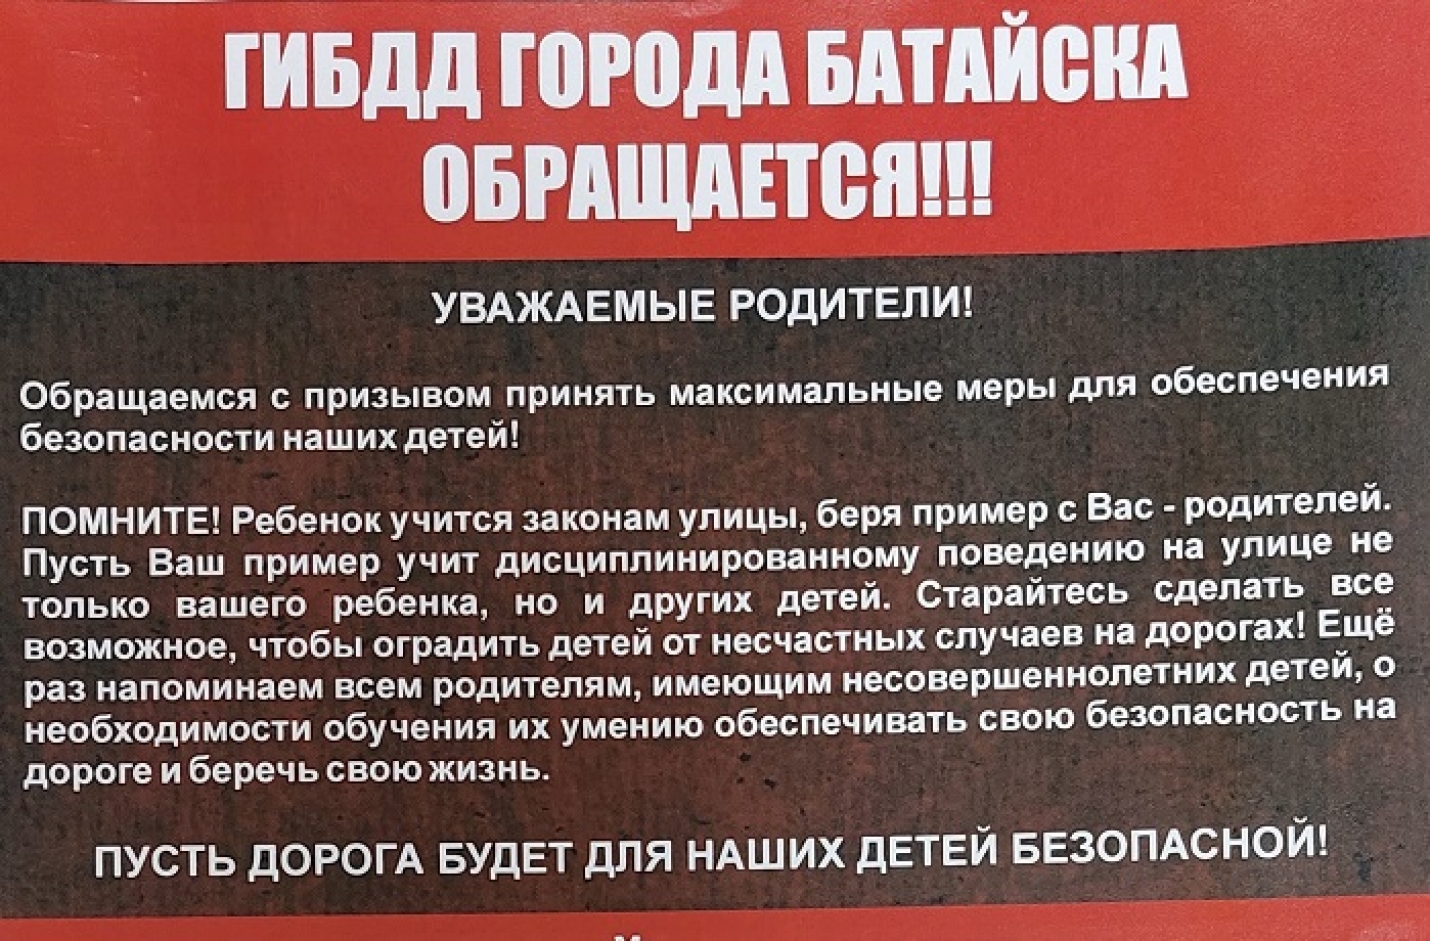 ГИБДД города Батайска обращается!!!